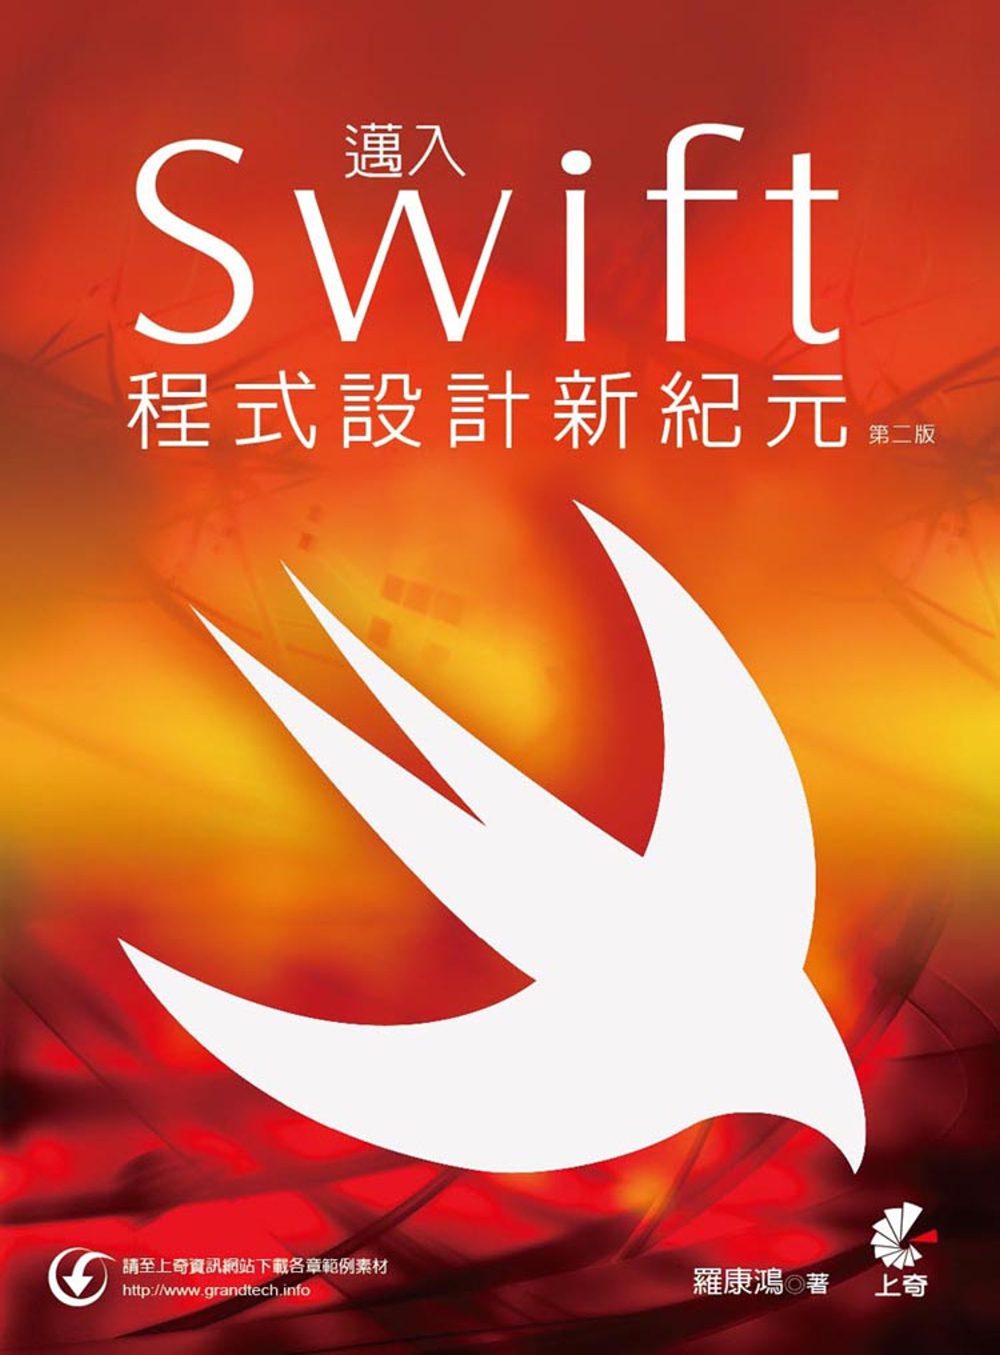 邁入Swift程式設計新紀元(第二版)